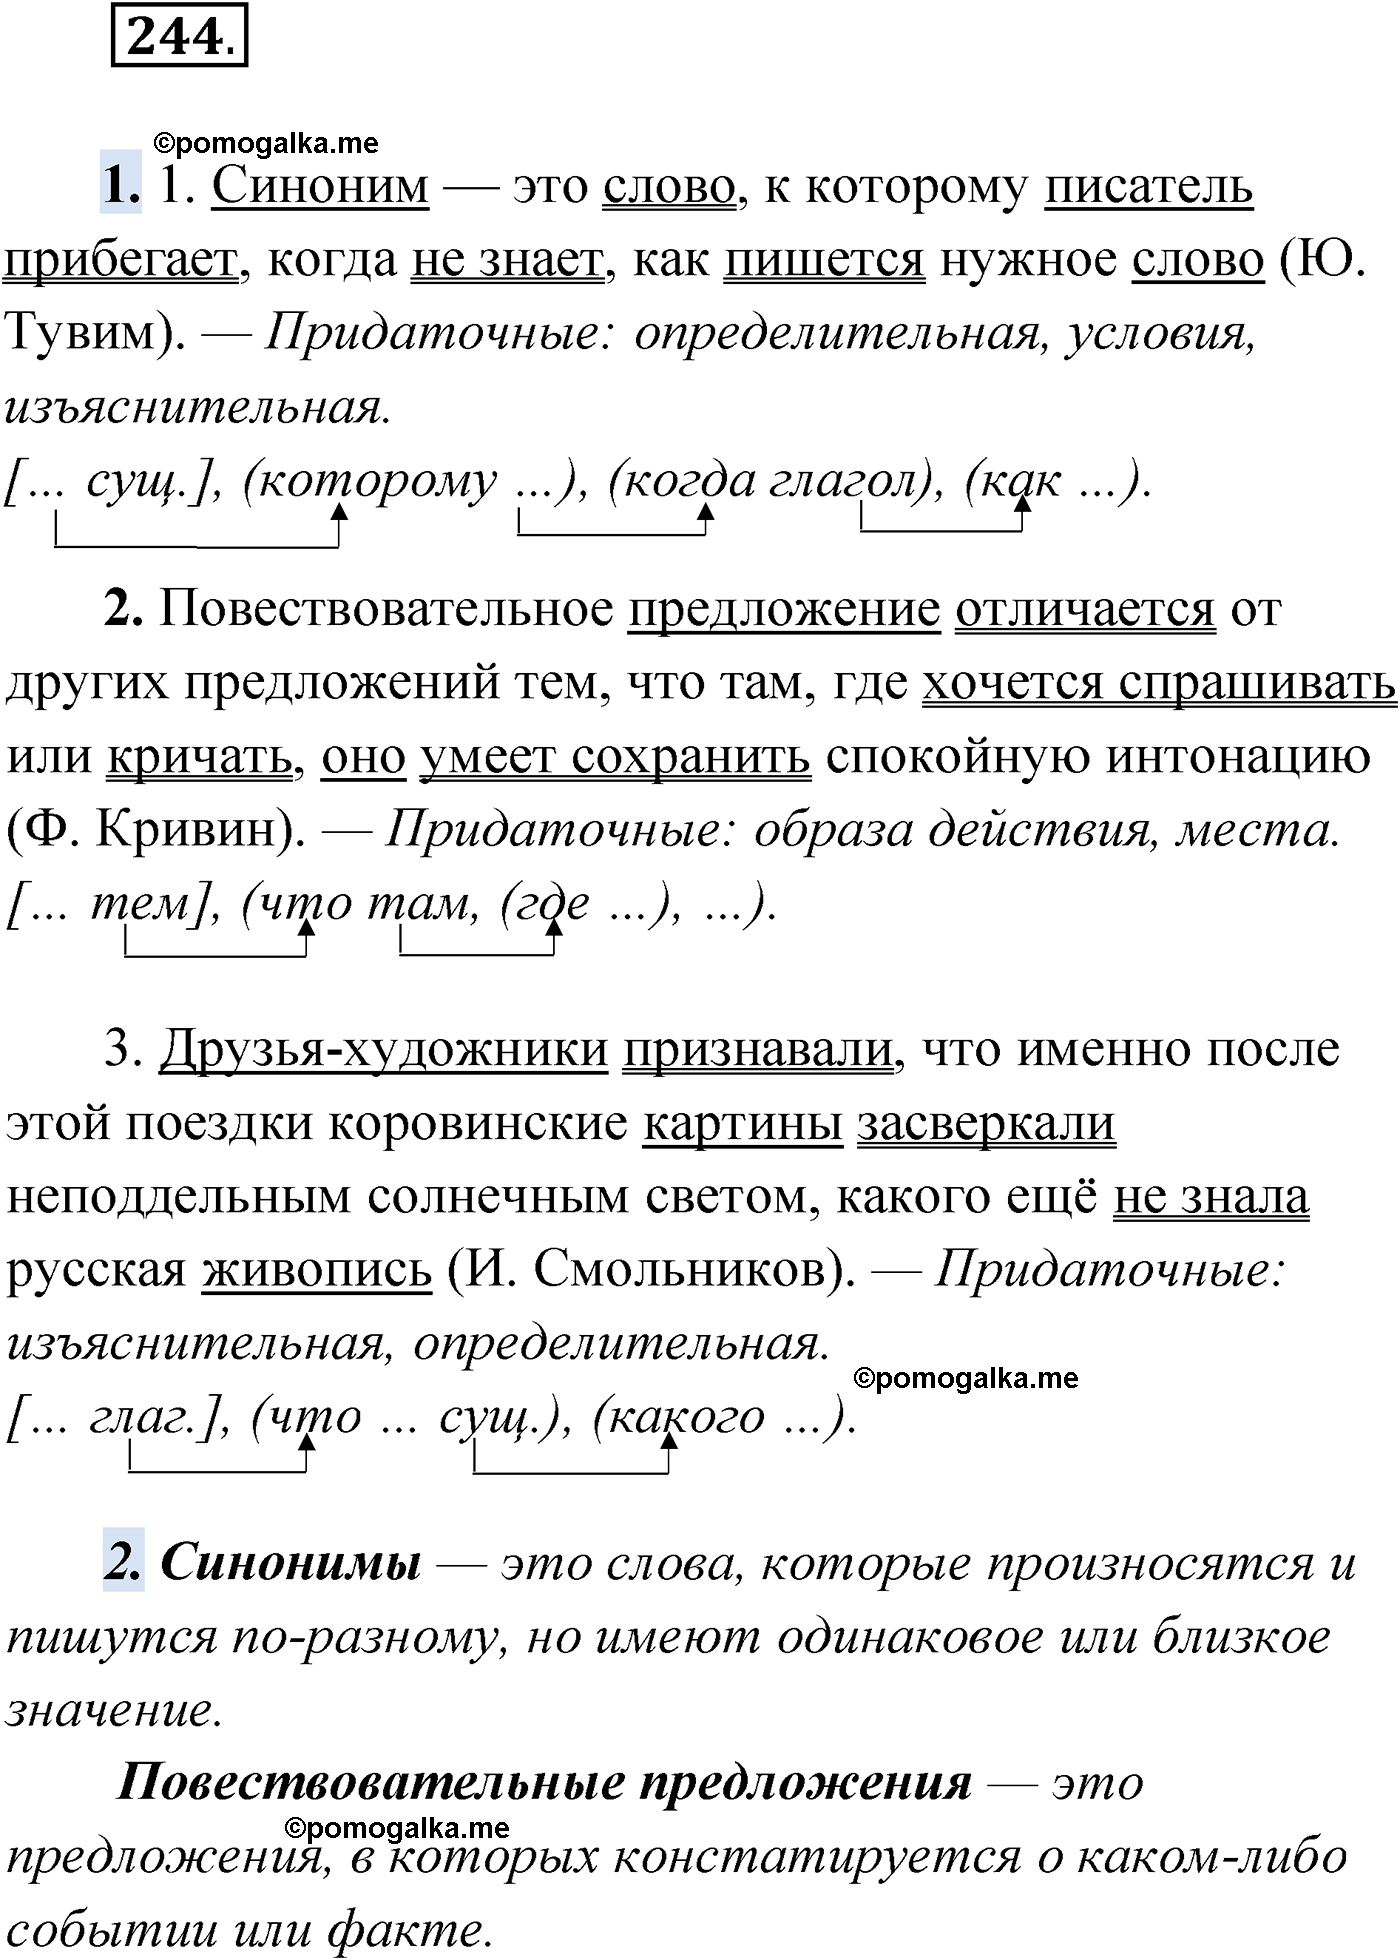 упражнение №244 русский язык 9 класс Мурина 2019 год